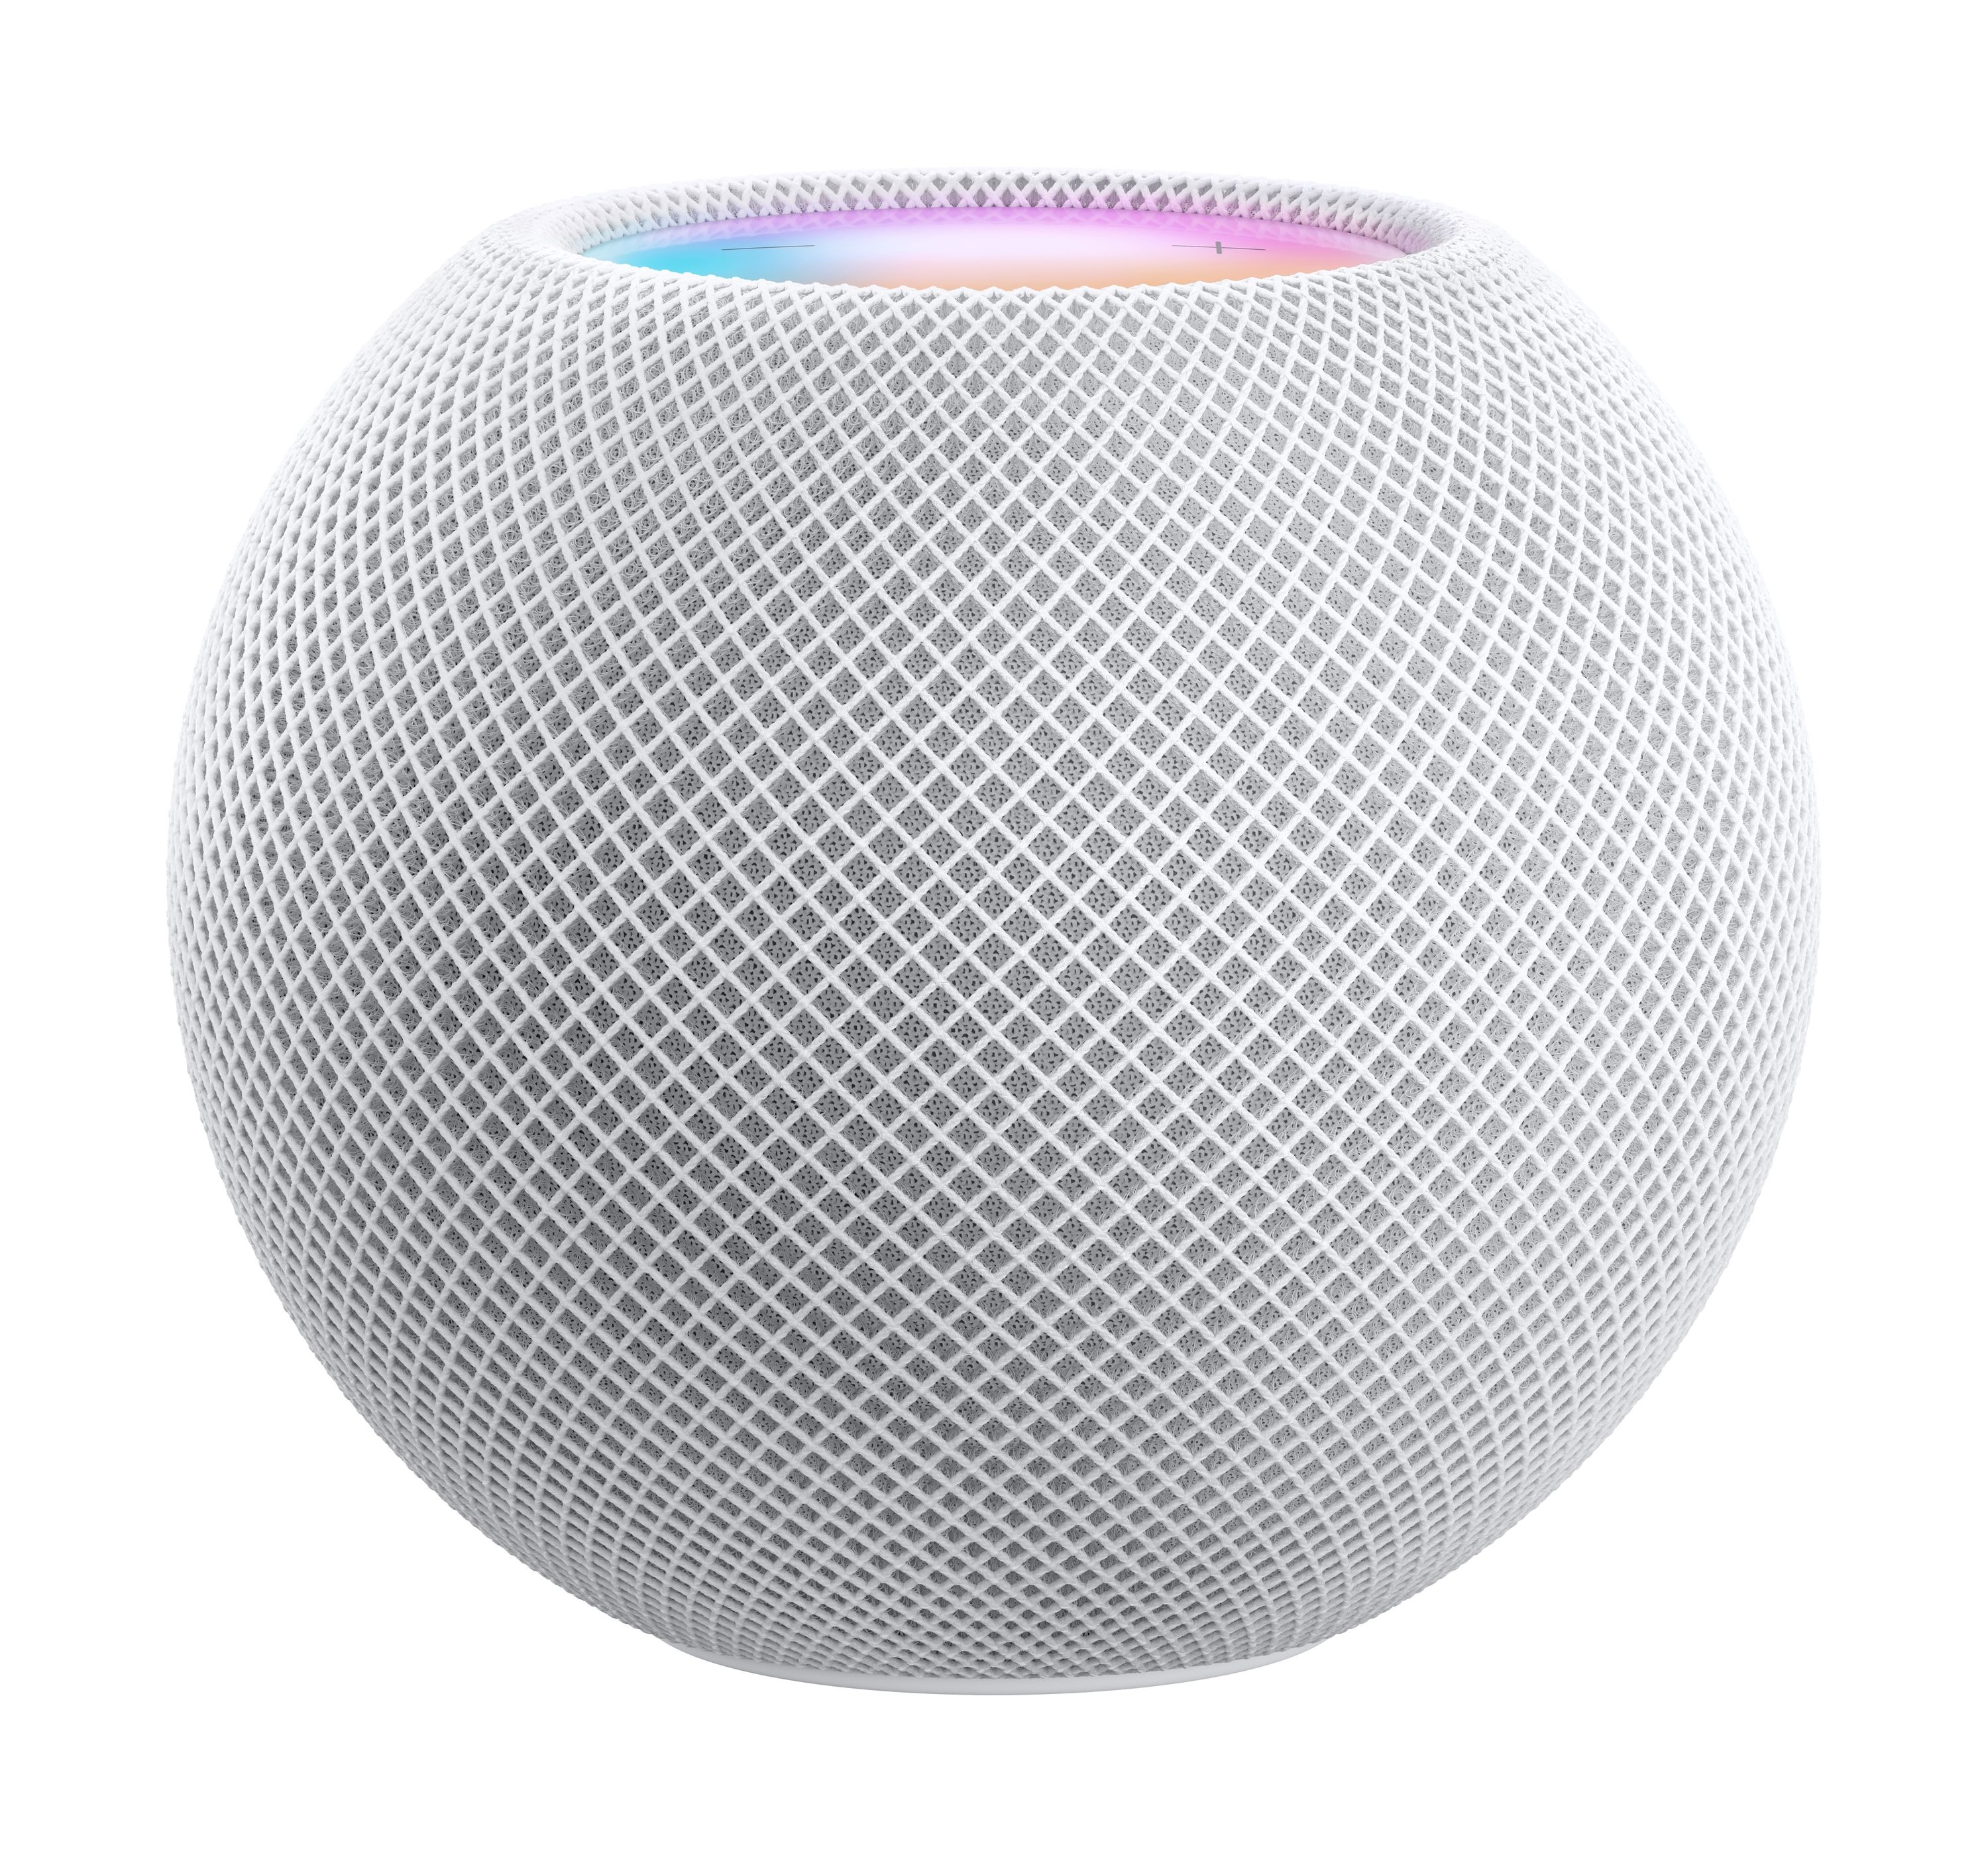 好評通販 Apple HomePod アップル ホームポッド(期間限定出品